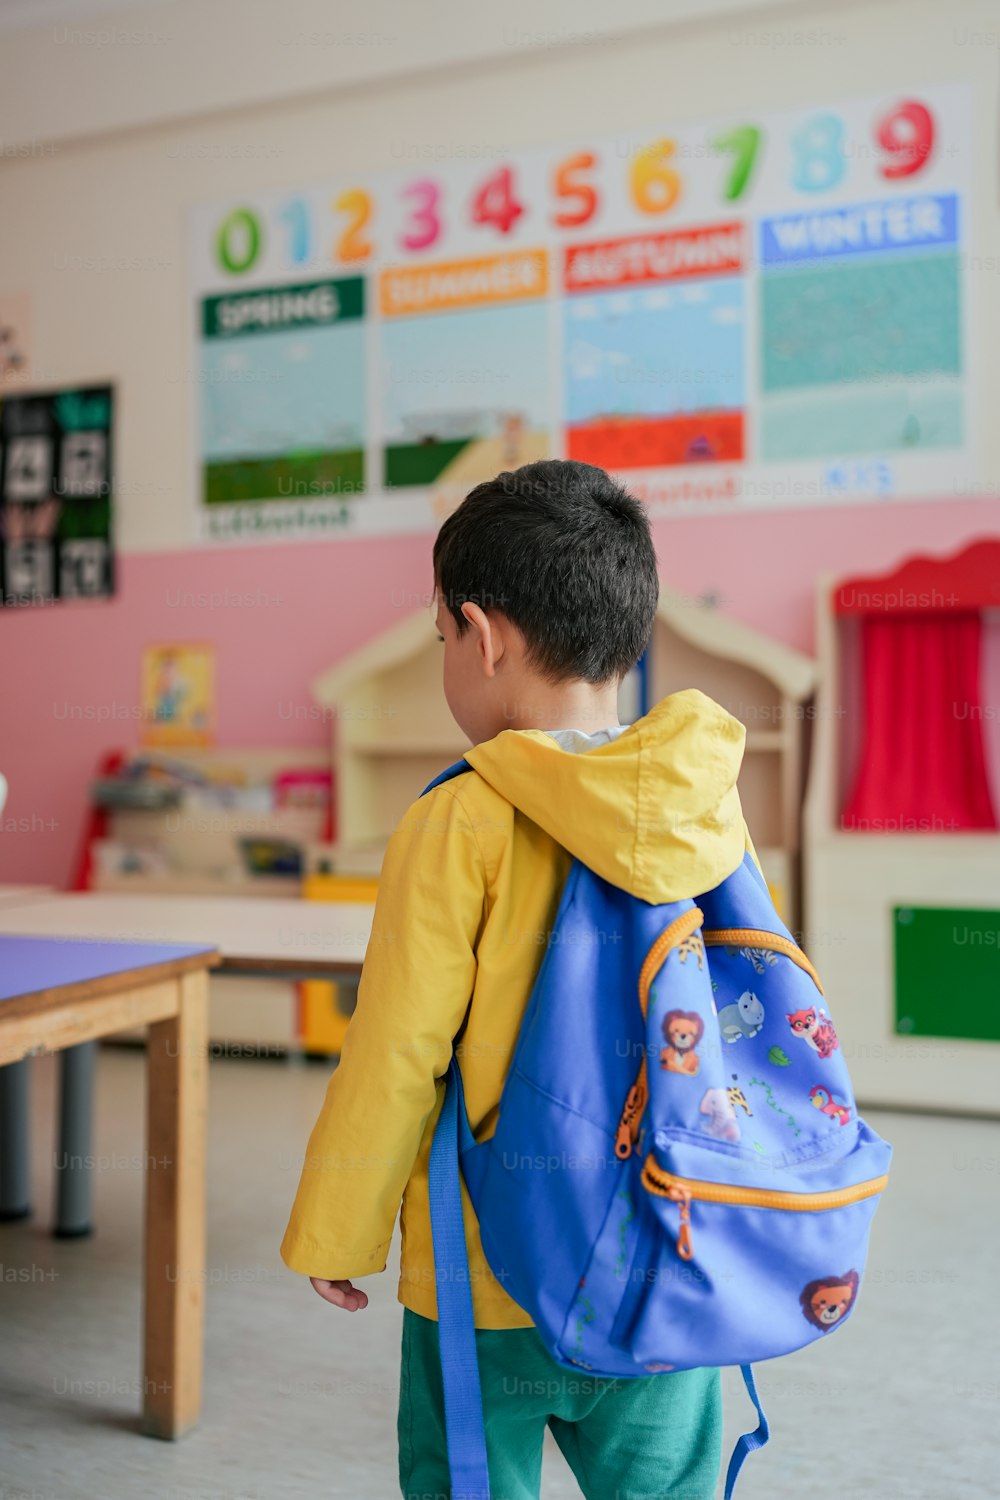 Ein kleiner Junge mit einem blauen Rucksack in einem Klassenzimmer